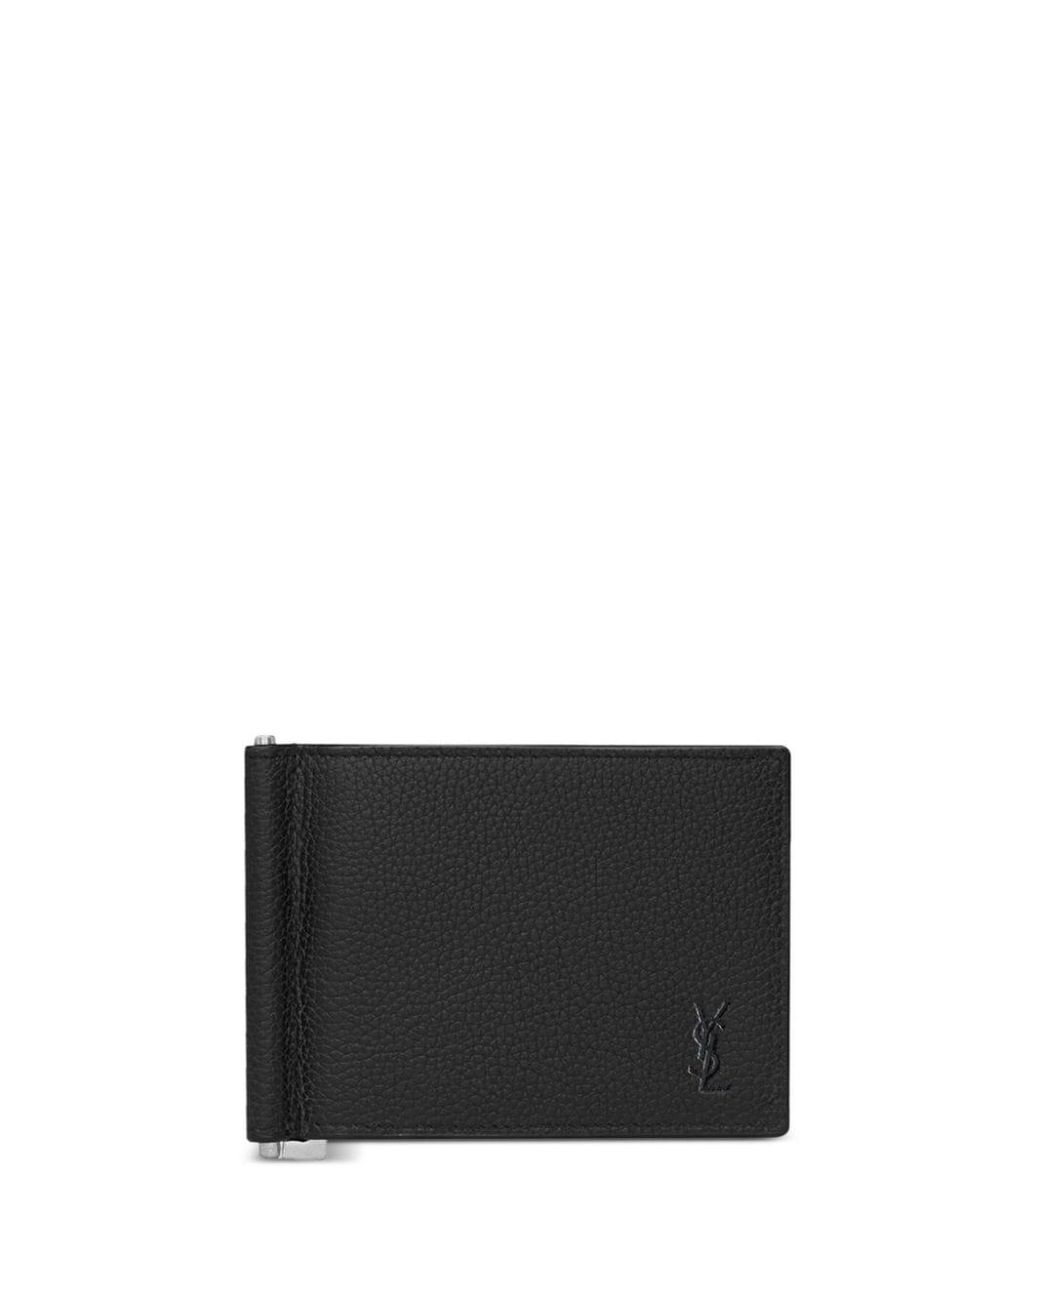 TINY CASSANDRE continental wallet in matte leather, Saint Laurent